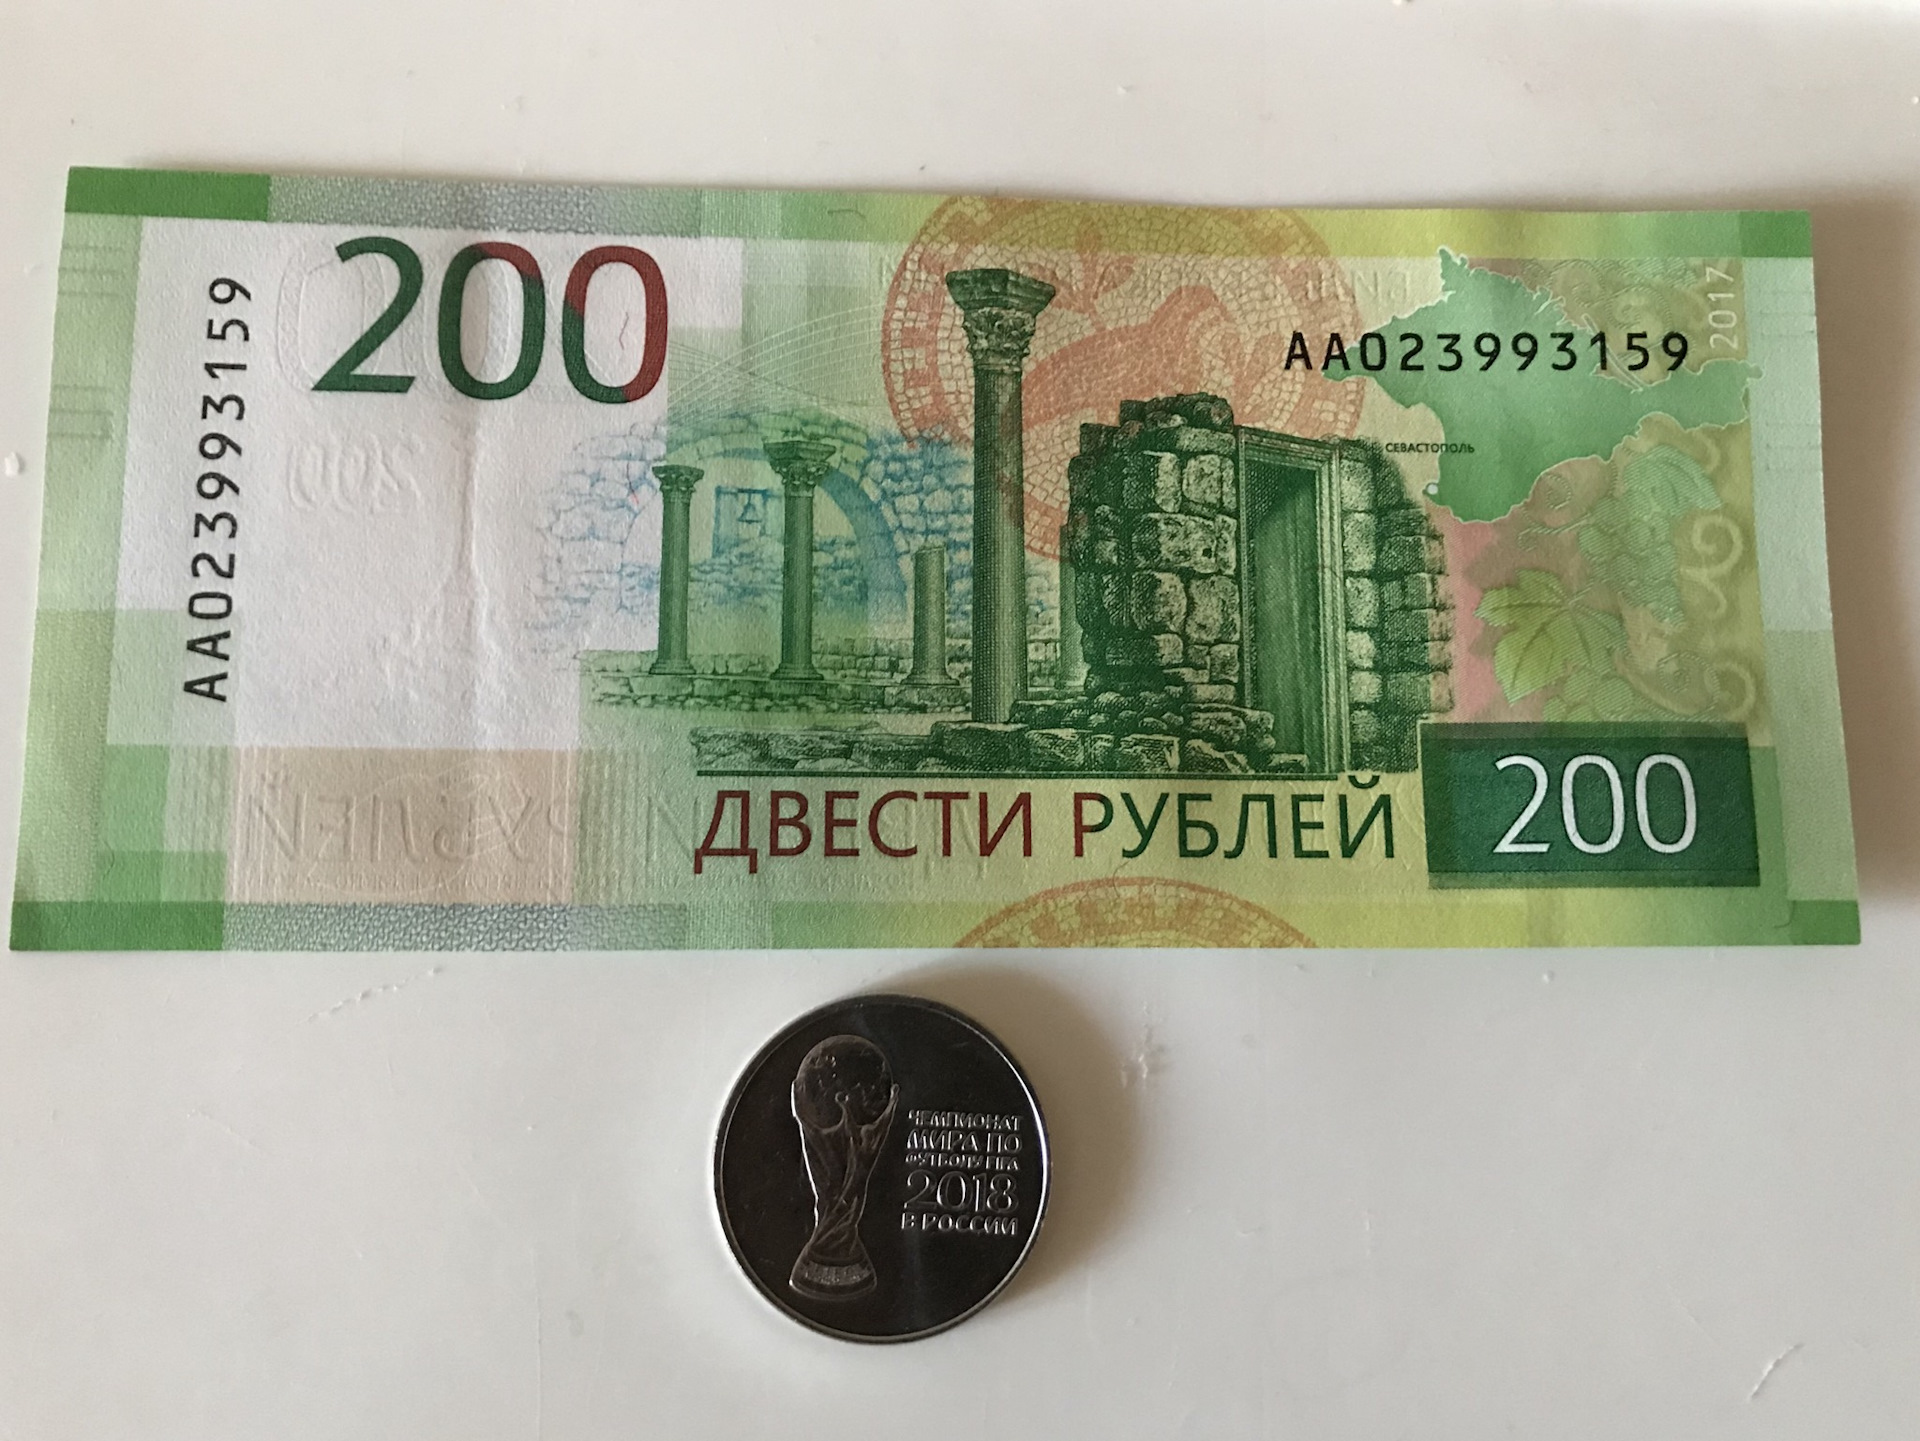 200 рублей срочно. 200 Рублей. 200 Рублей юбилейные. Двести рублей юбилейные. Памятные 200 руб.